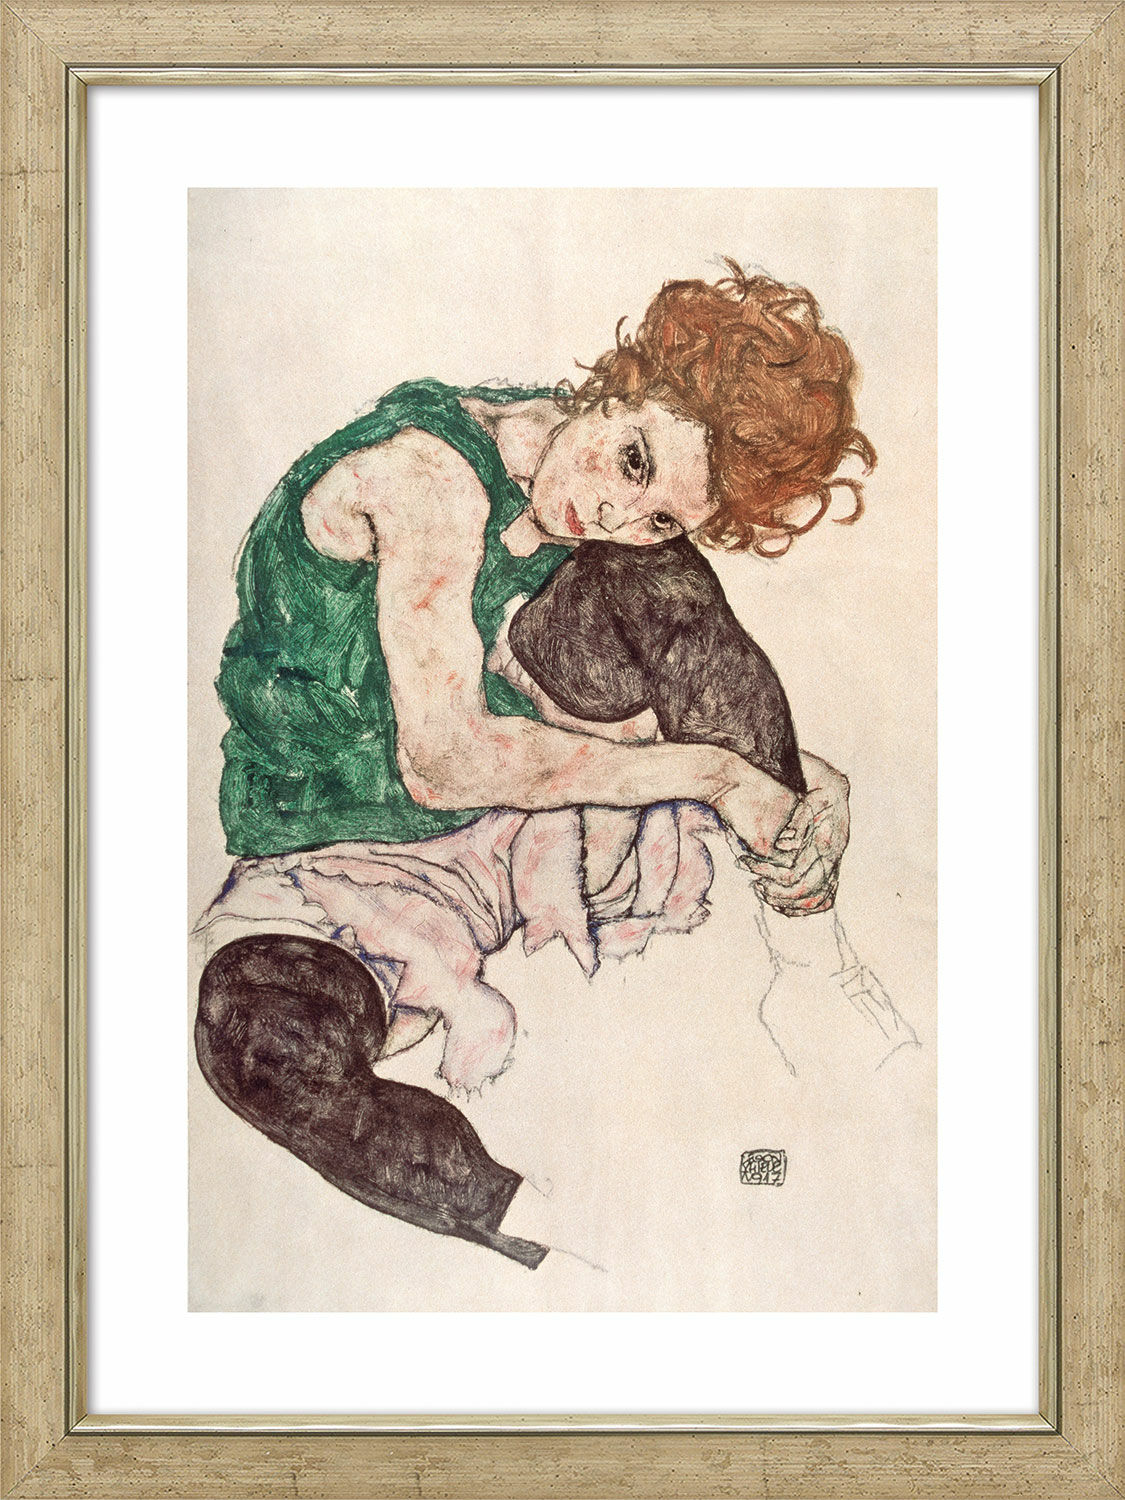 Bild "Sittande kvinna med upphöjt knä" (1917), inramad von Egon Schiele